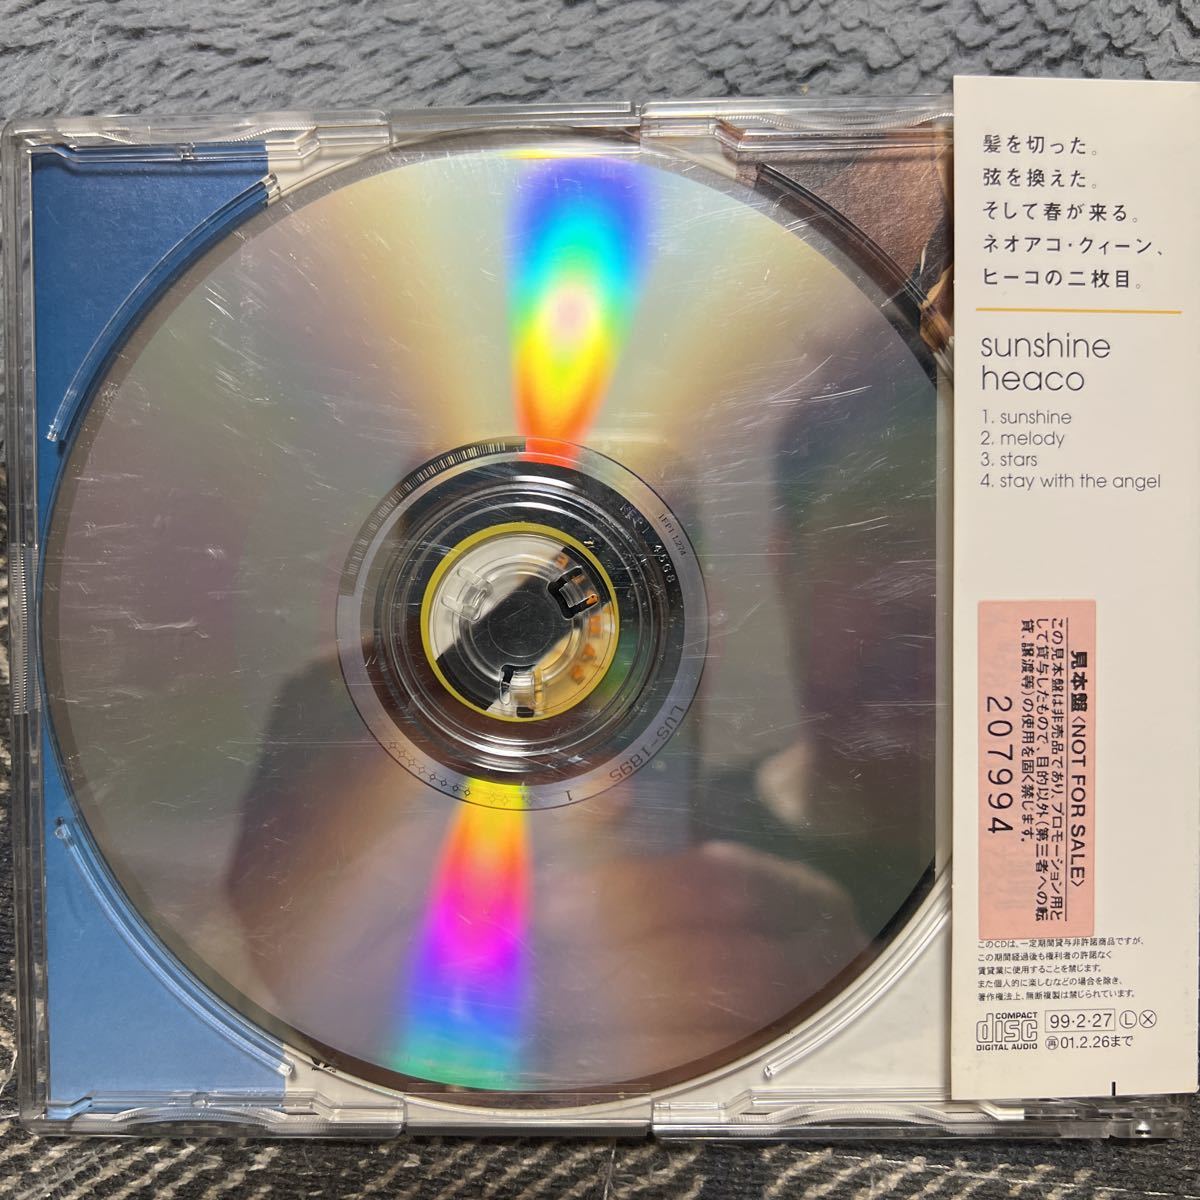 シングルCD ヒーコ/ サンシャイン　ESCB-1957